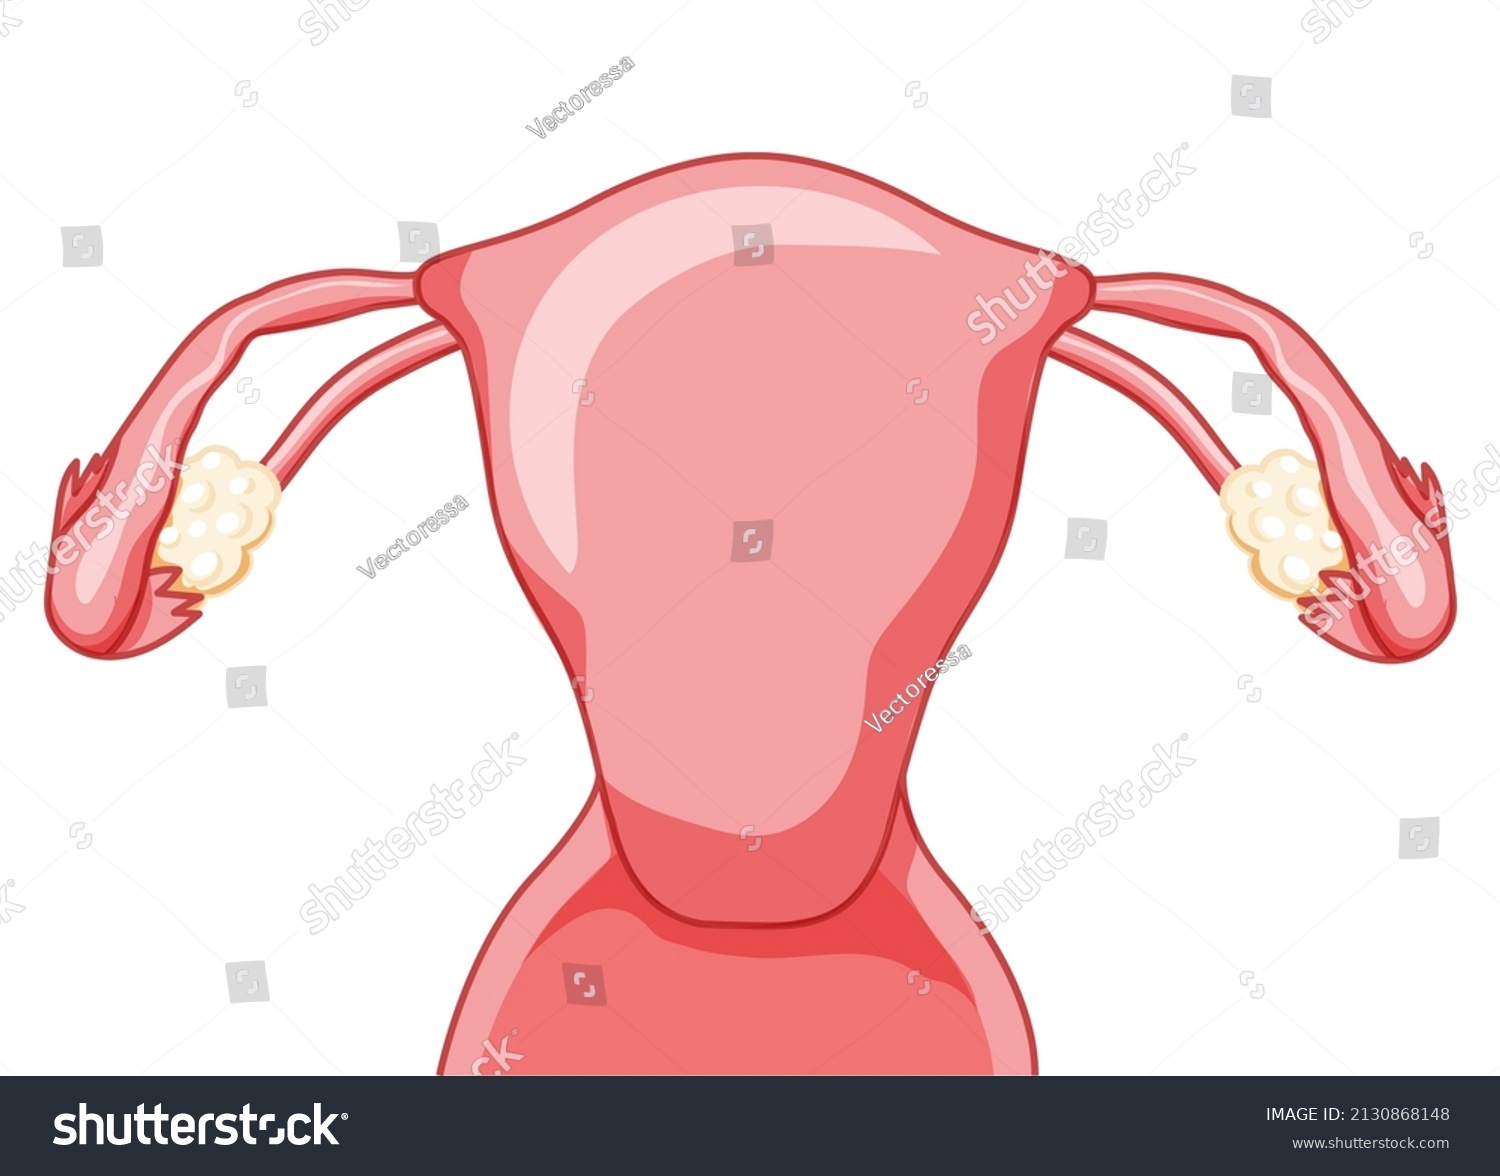 удалены яичники матка испытала оргазм фото 53